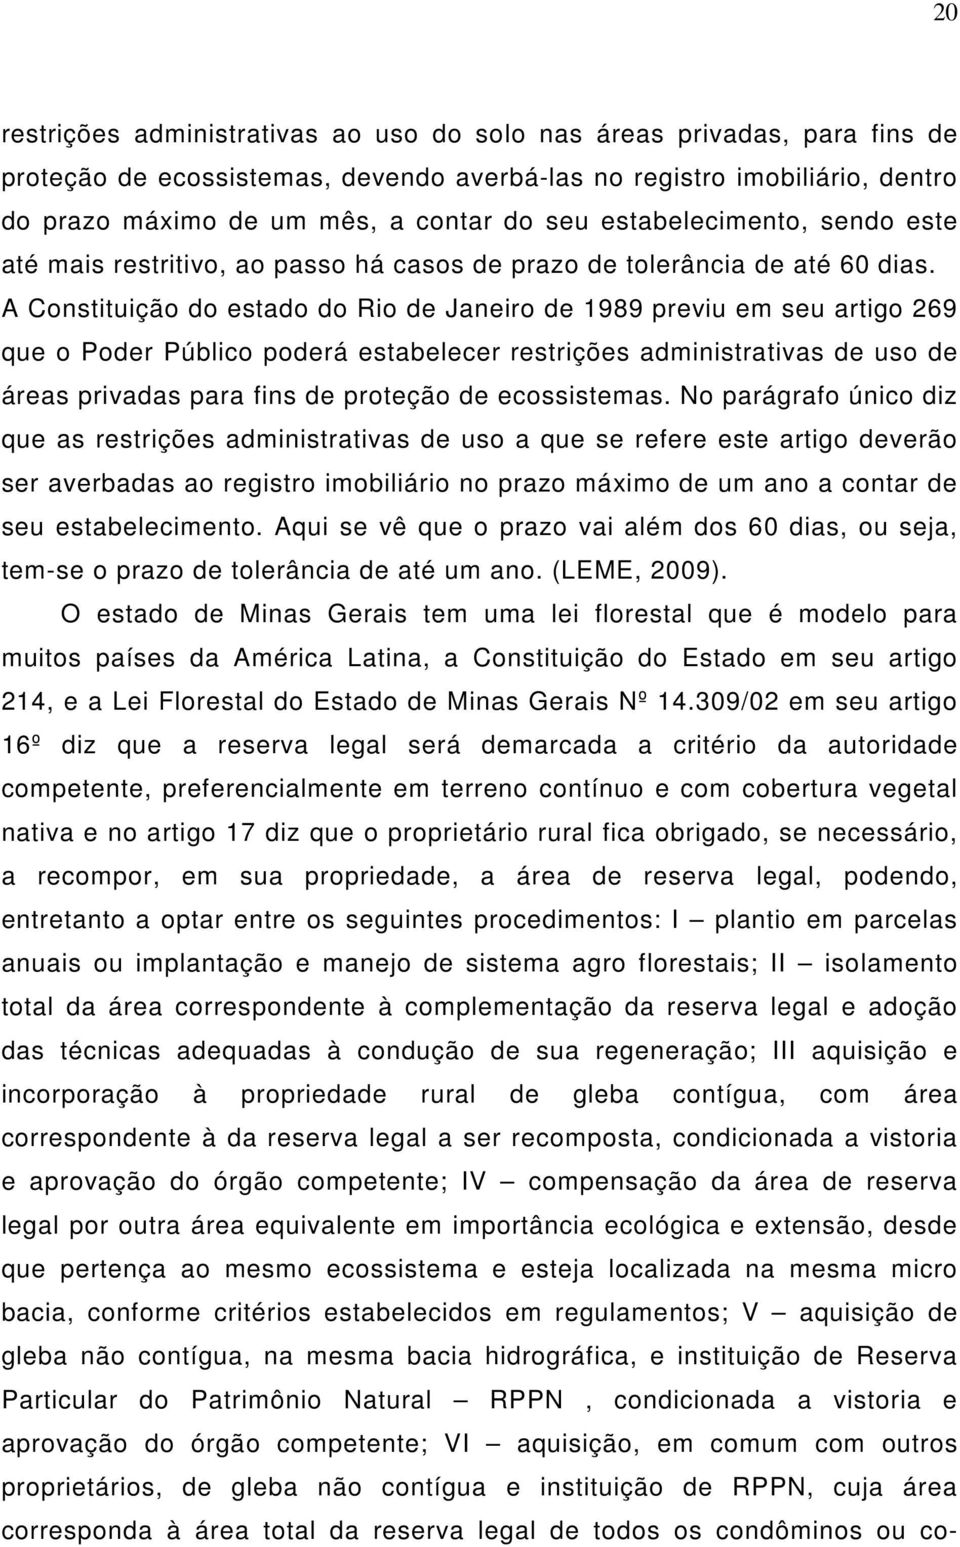 A Constituição do estado do Rio de Janeiro de 1989 previu em seu artigo 269 que o Poder Público poderá estabelecer restrições administrativas de uso de áreas privadas para fins de proteção de